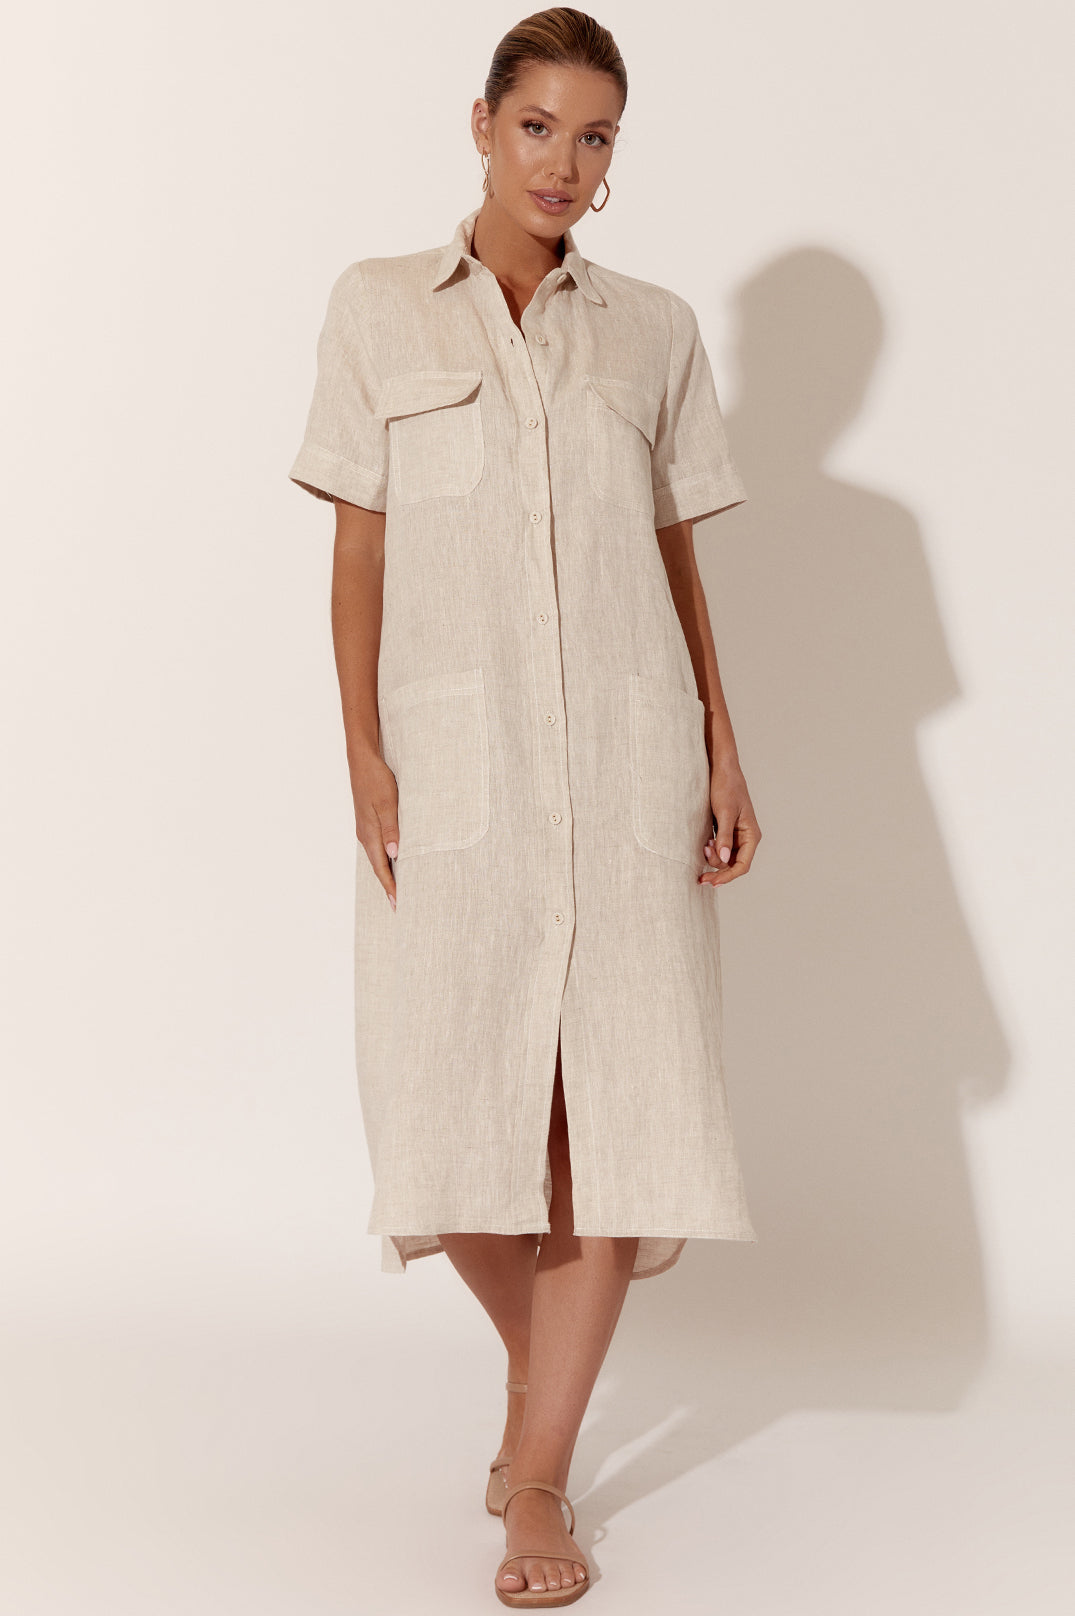 Adorne Petrina Short Sleeve Linen Dress - Natural